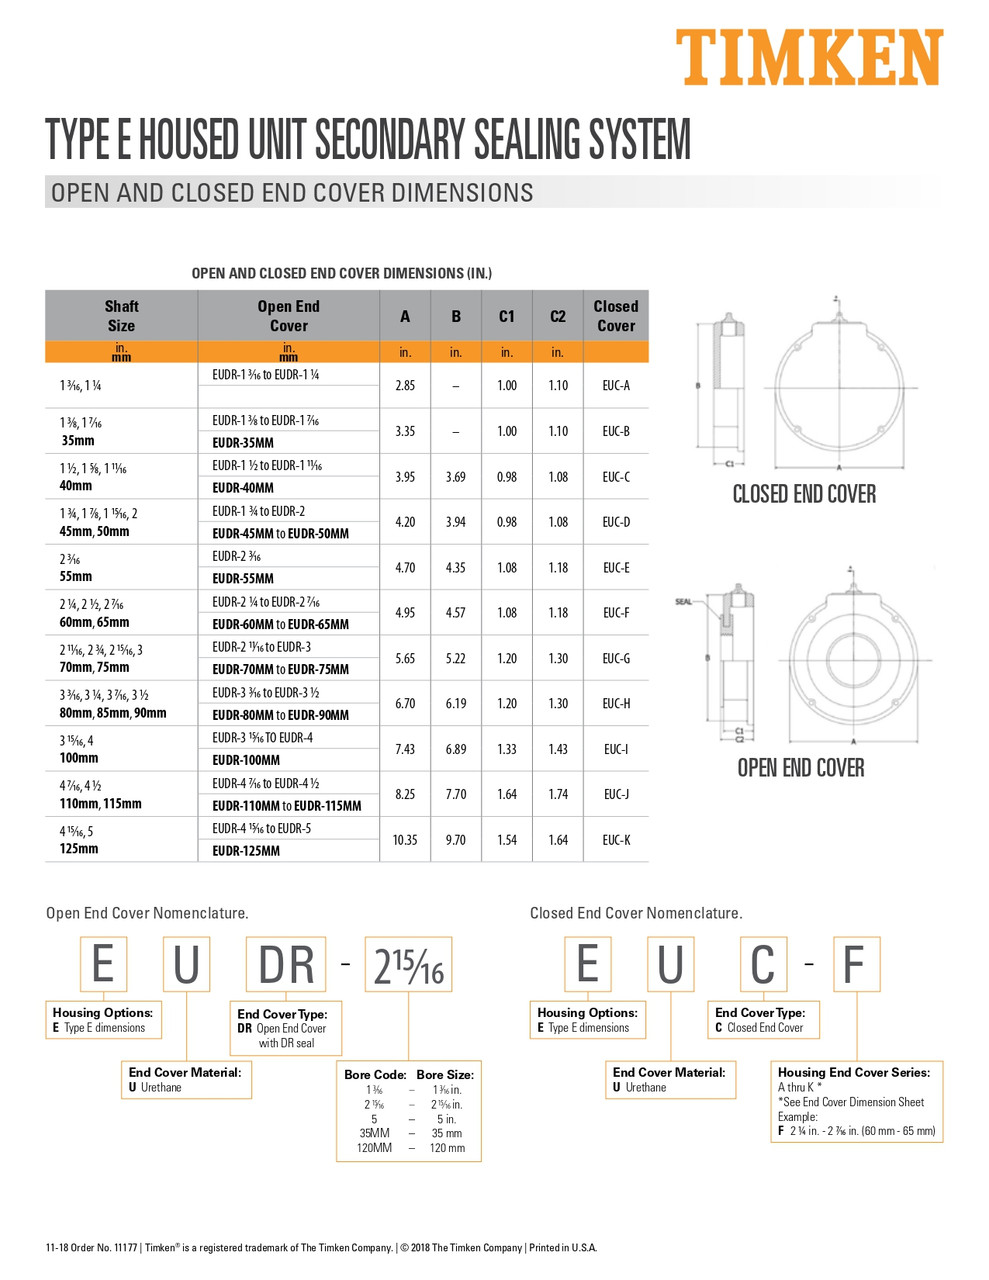 1-3/16" Type-E Bearing Open End Cover  EUDR-1 3/16